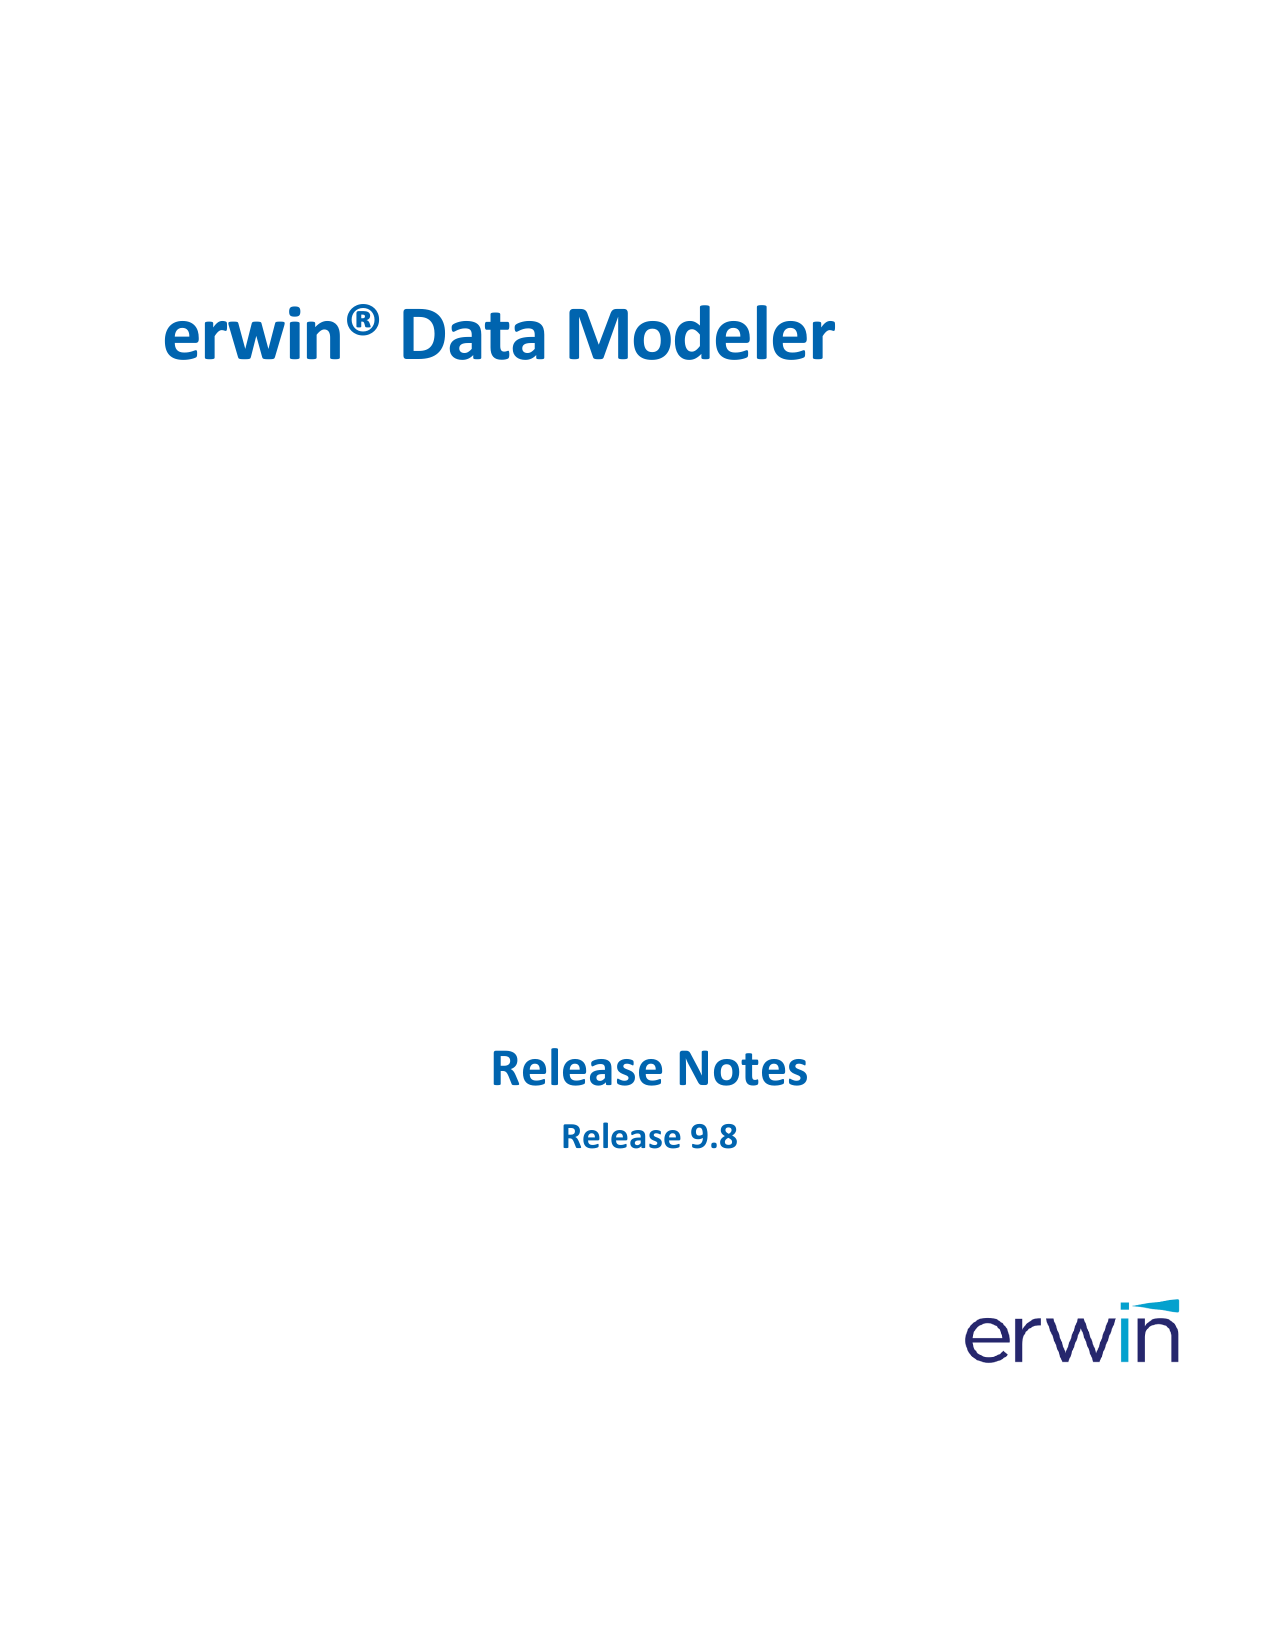 erwin data modeler for students